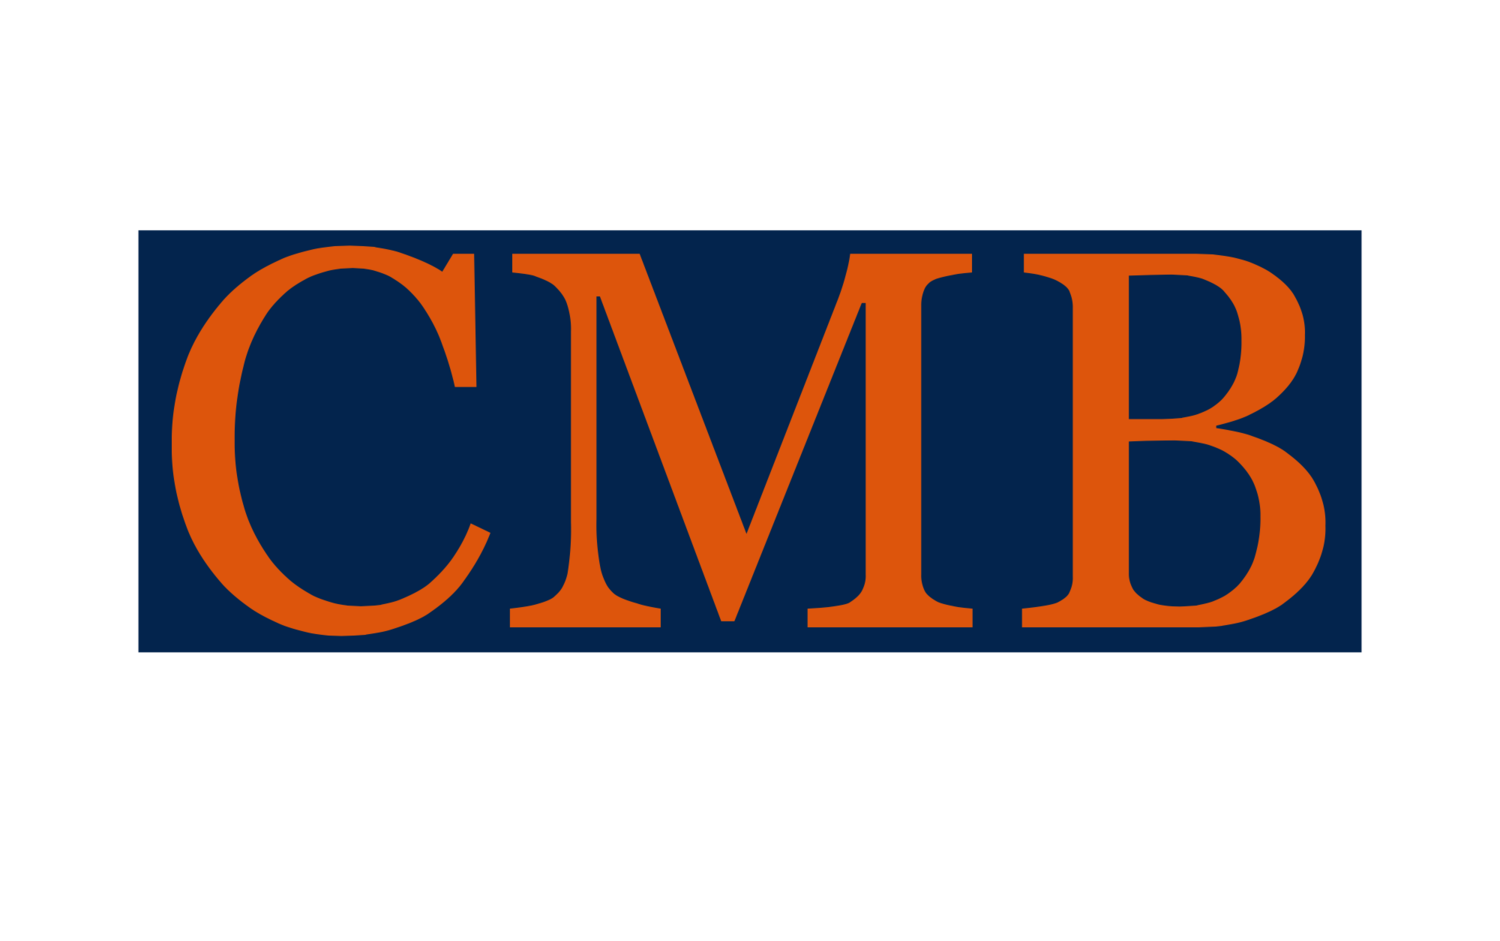 CMB Accounting, LLC